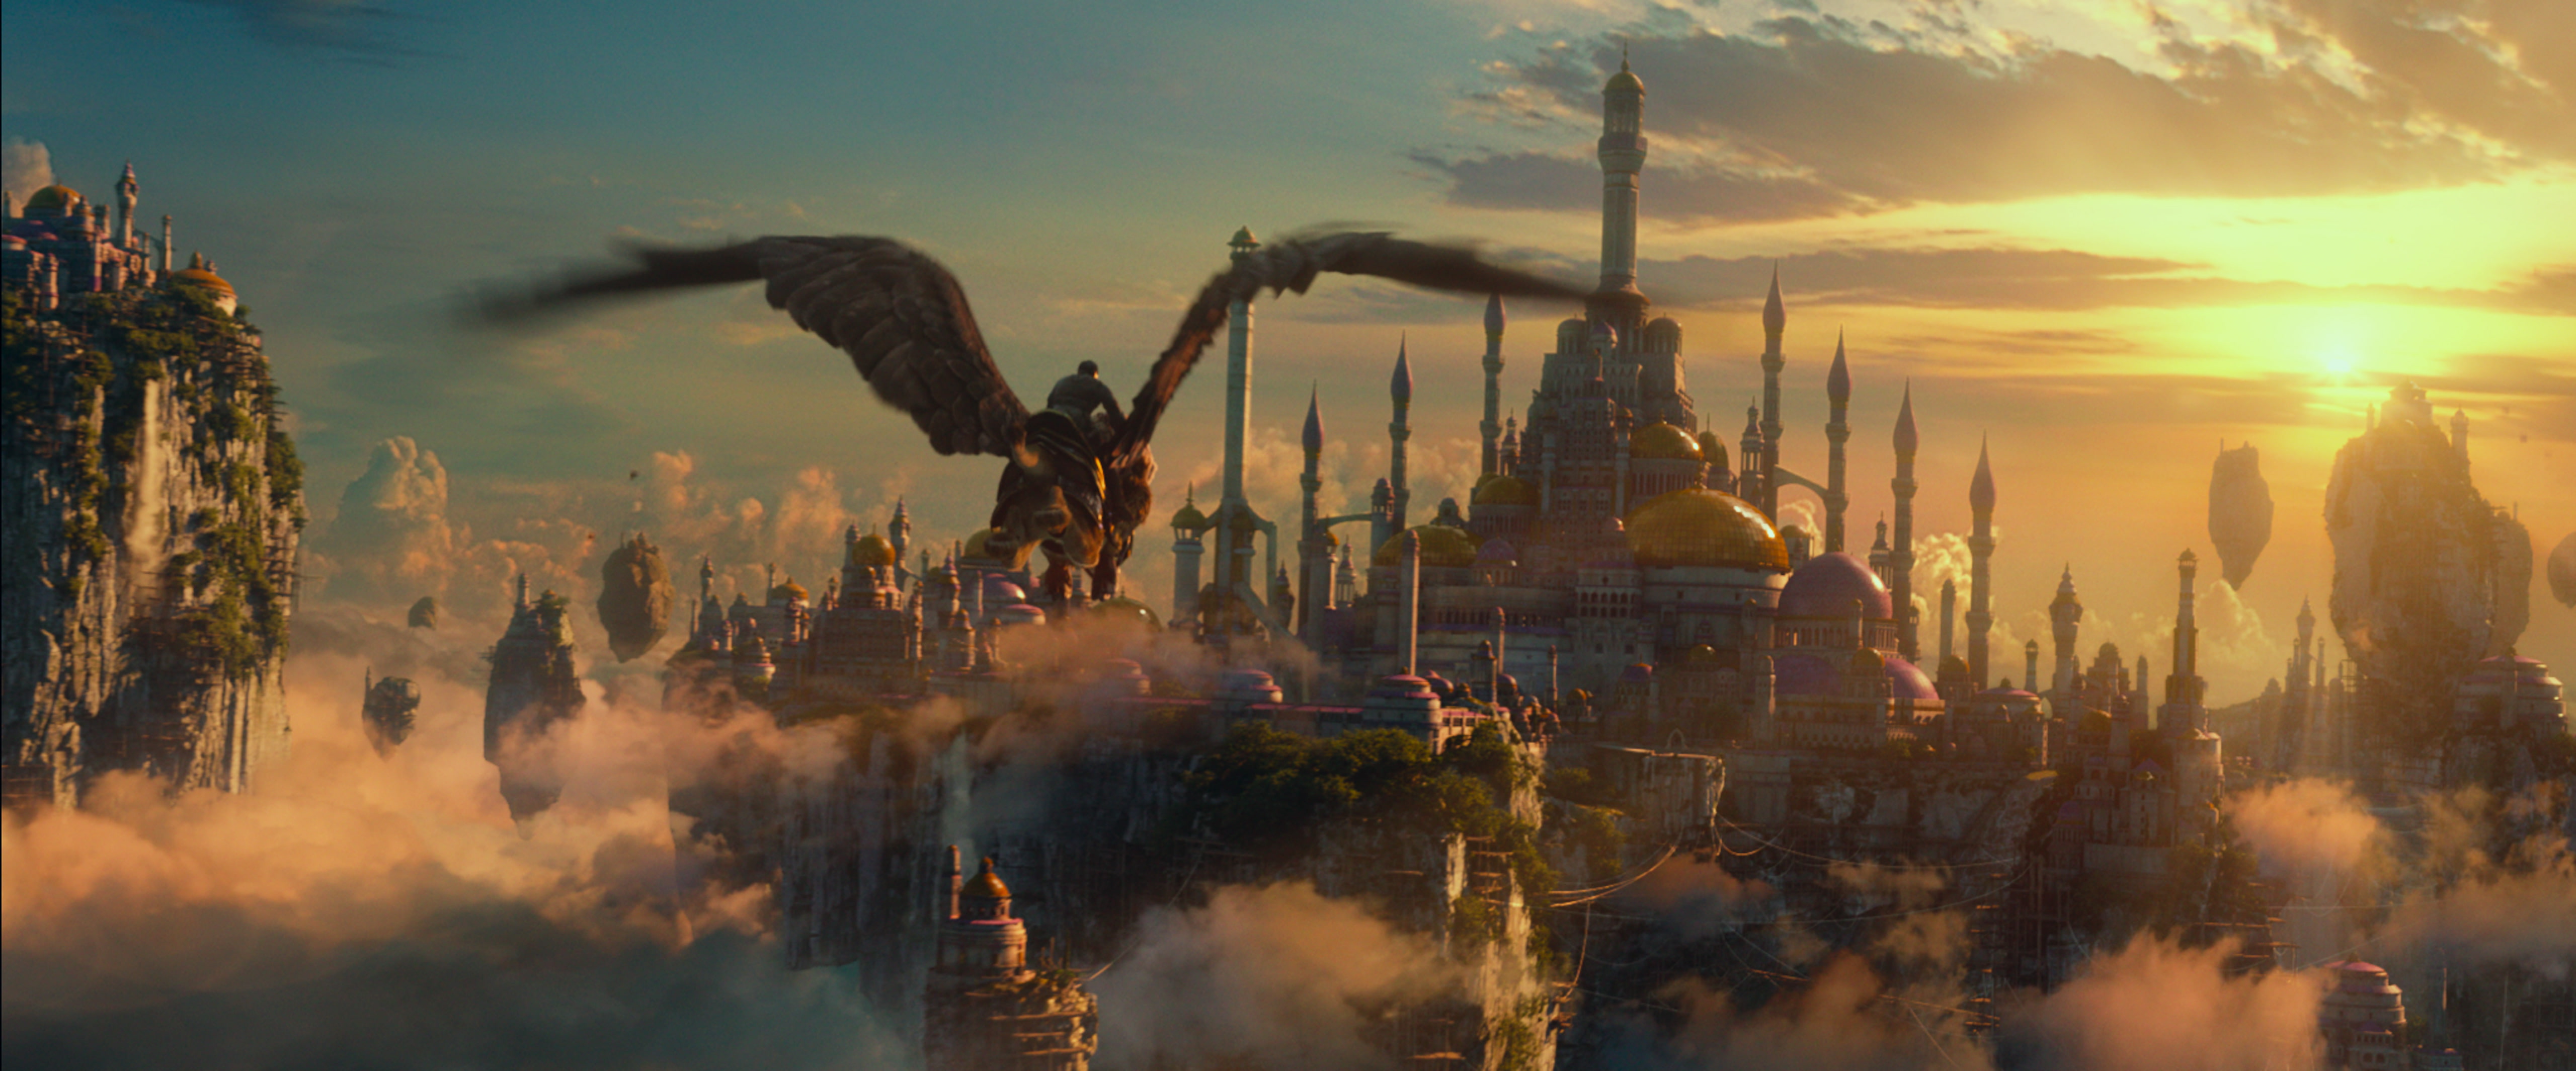 alliance, fly, Griffin, movie, warcraft, Warcraft Movie, Wow Movie